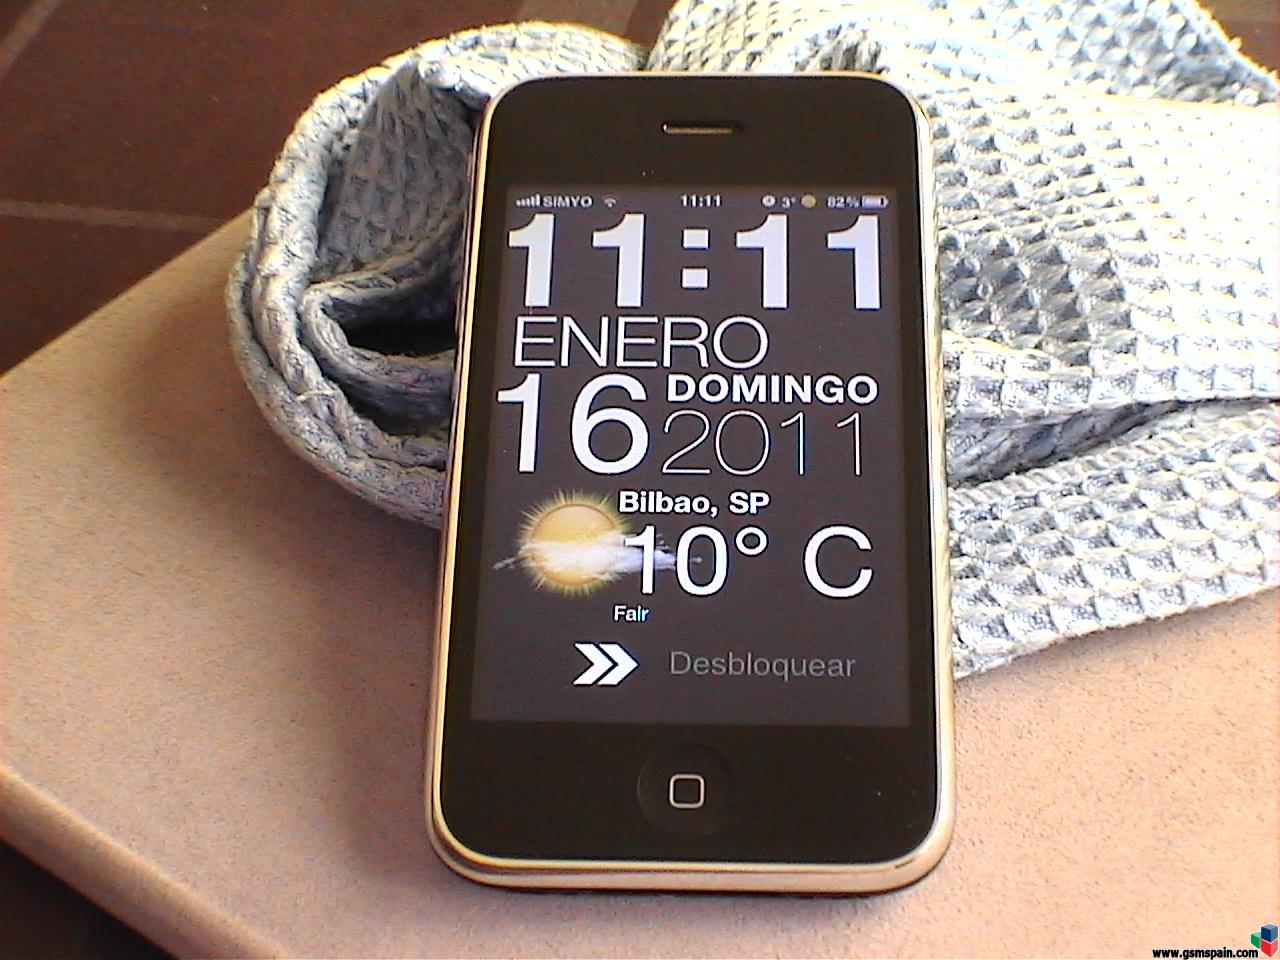 Vendo - iPhone 3GS 32GB Negro. Libre por Imei. Acabada la permanencia